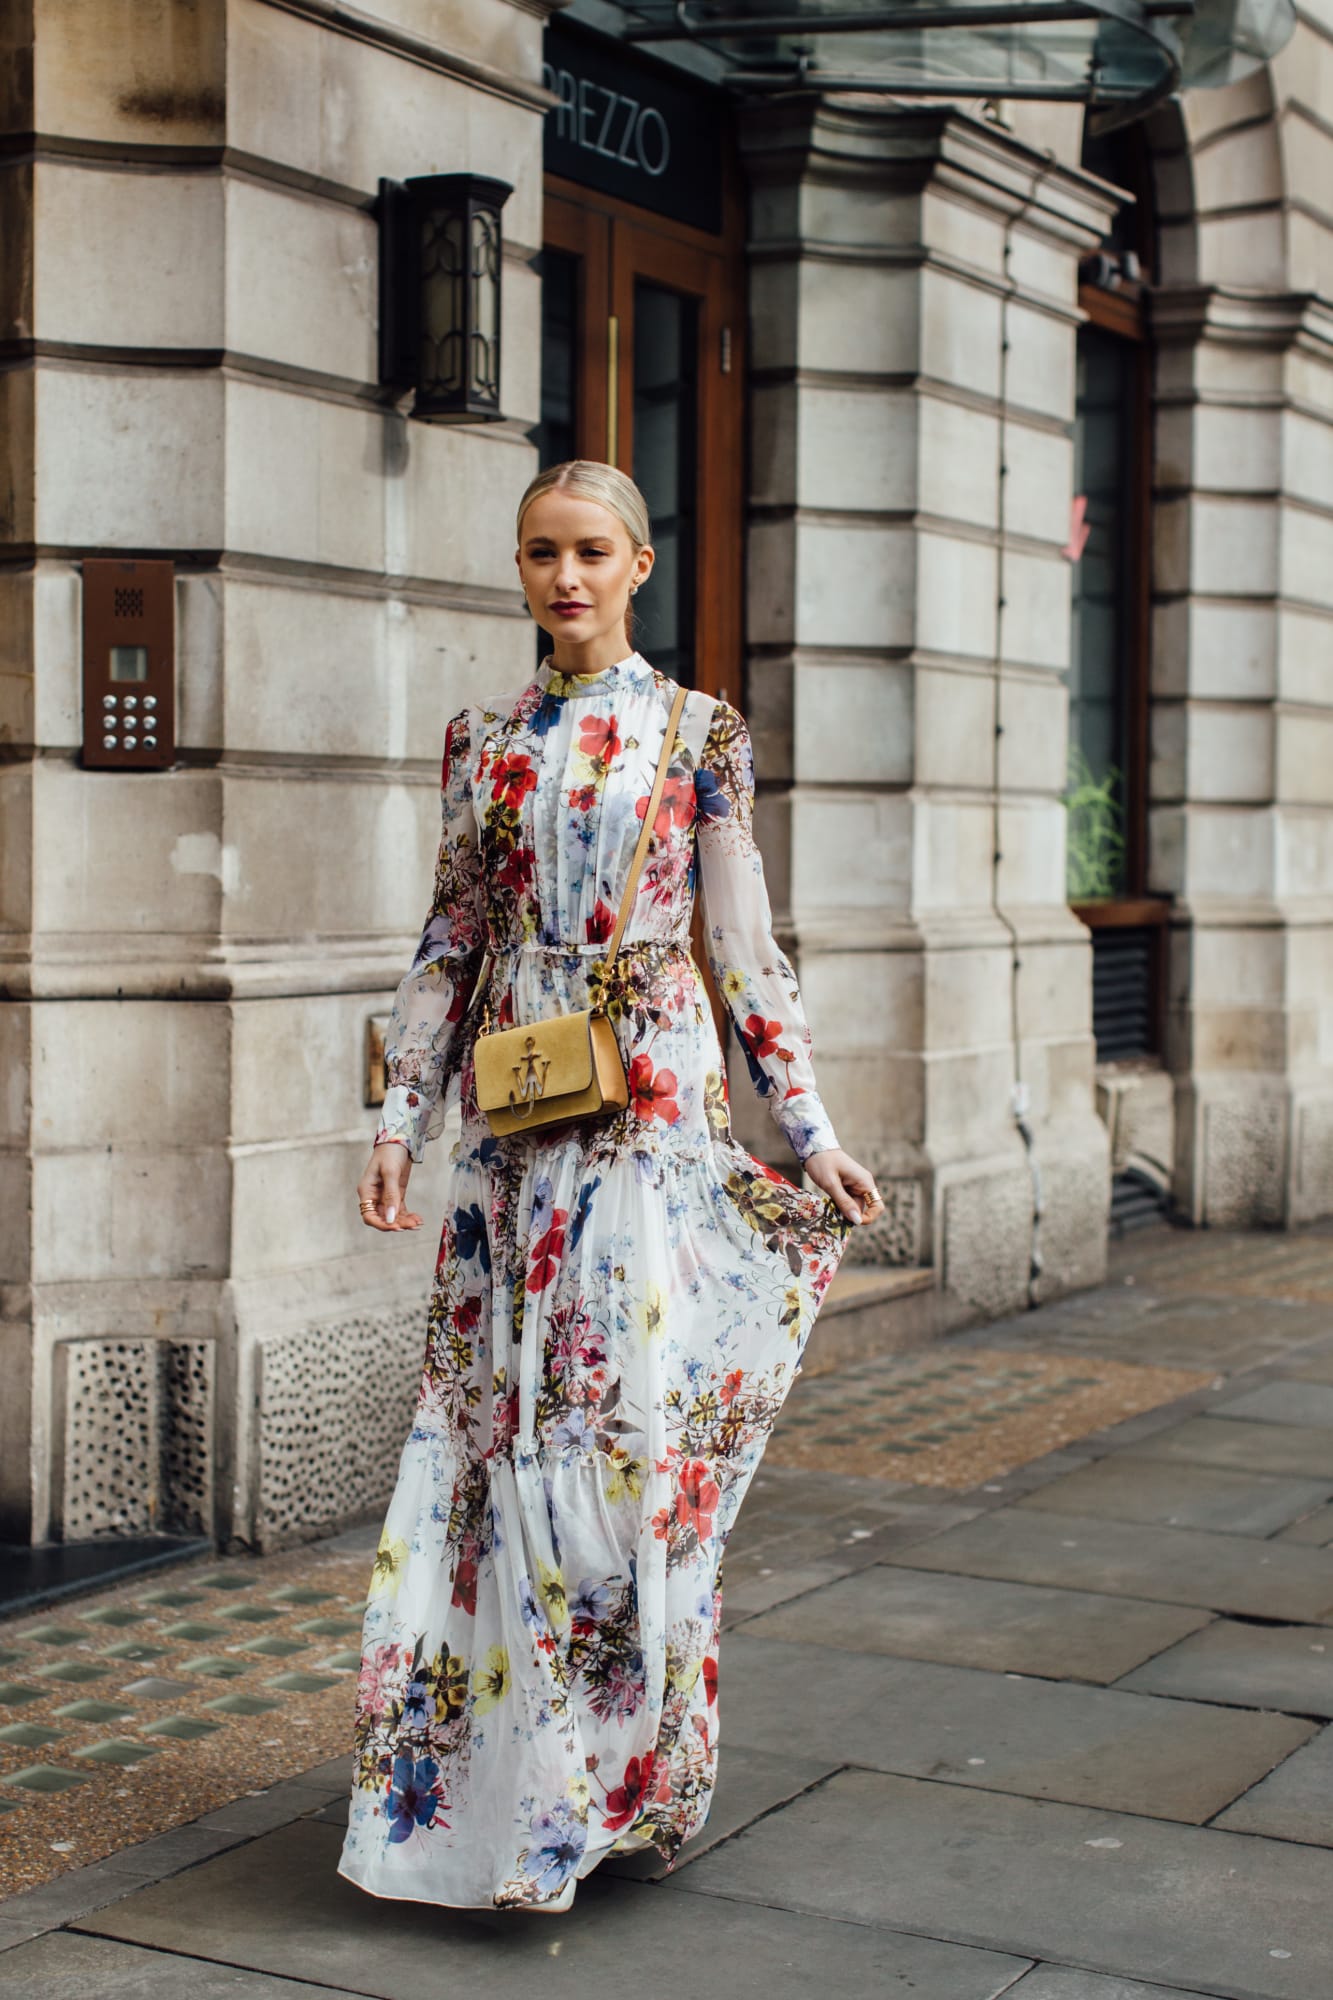 Váy hoa, đầm nhún tưng bừng, sống động trên đường phố London - 1